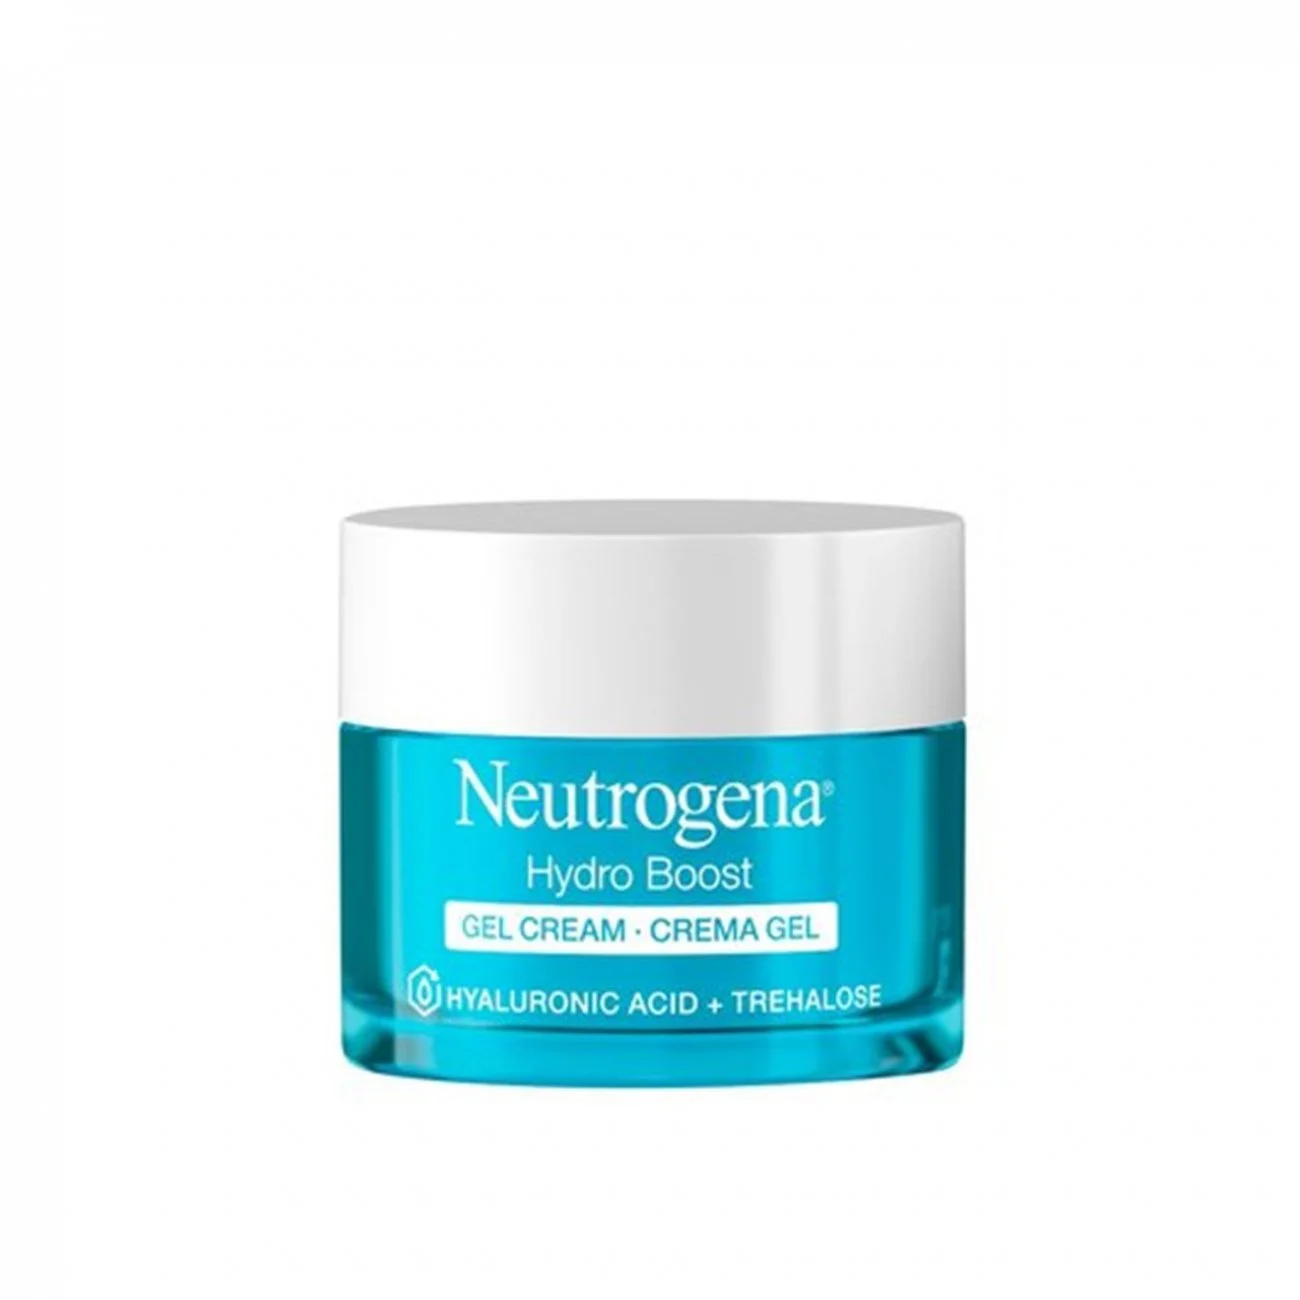 Neutrogena product shot